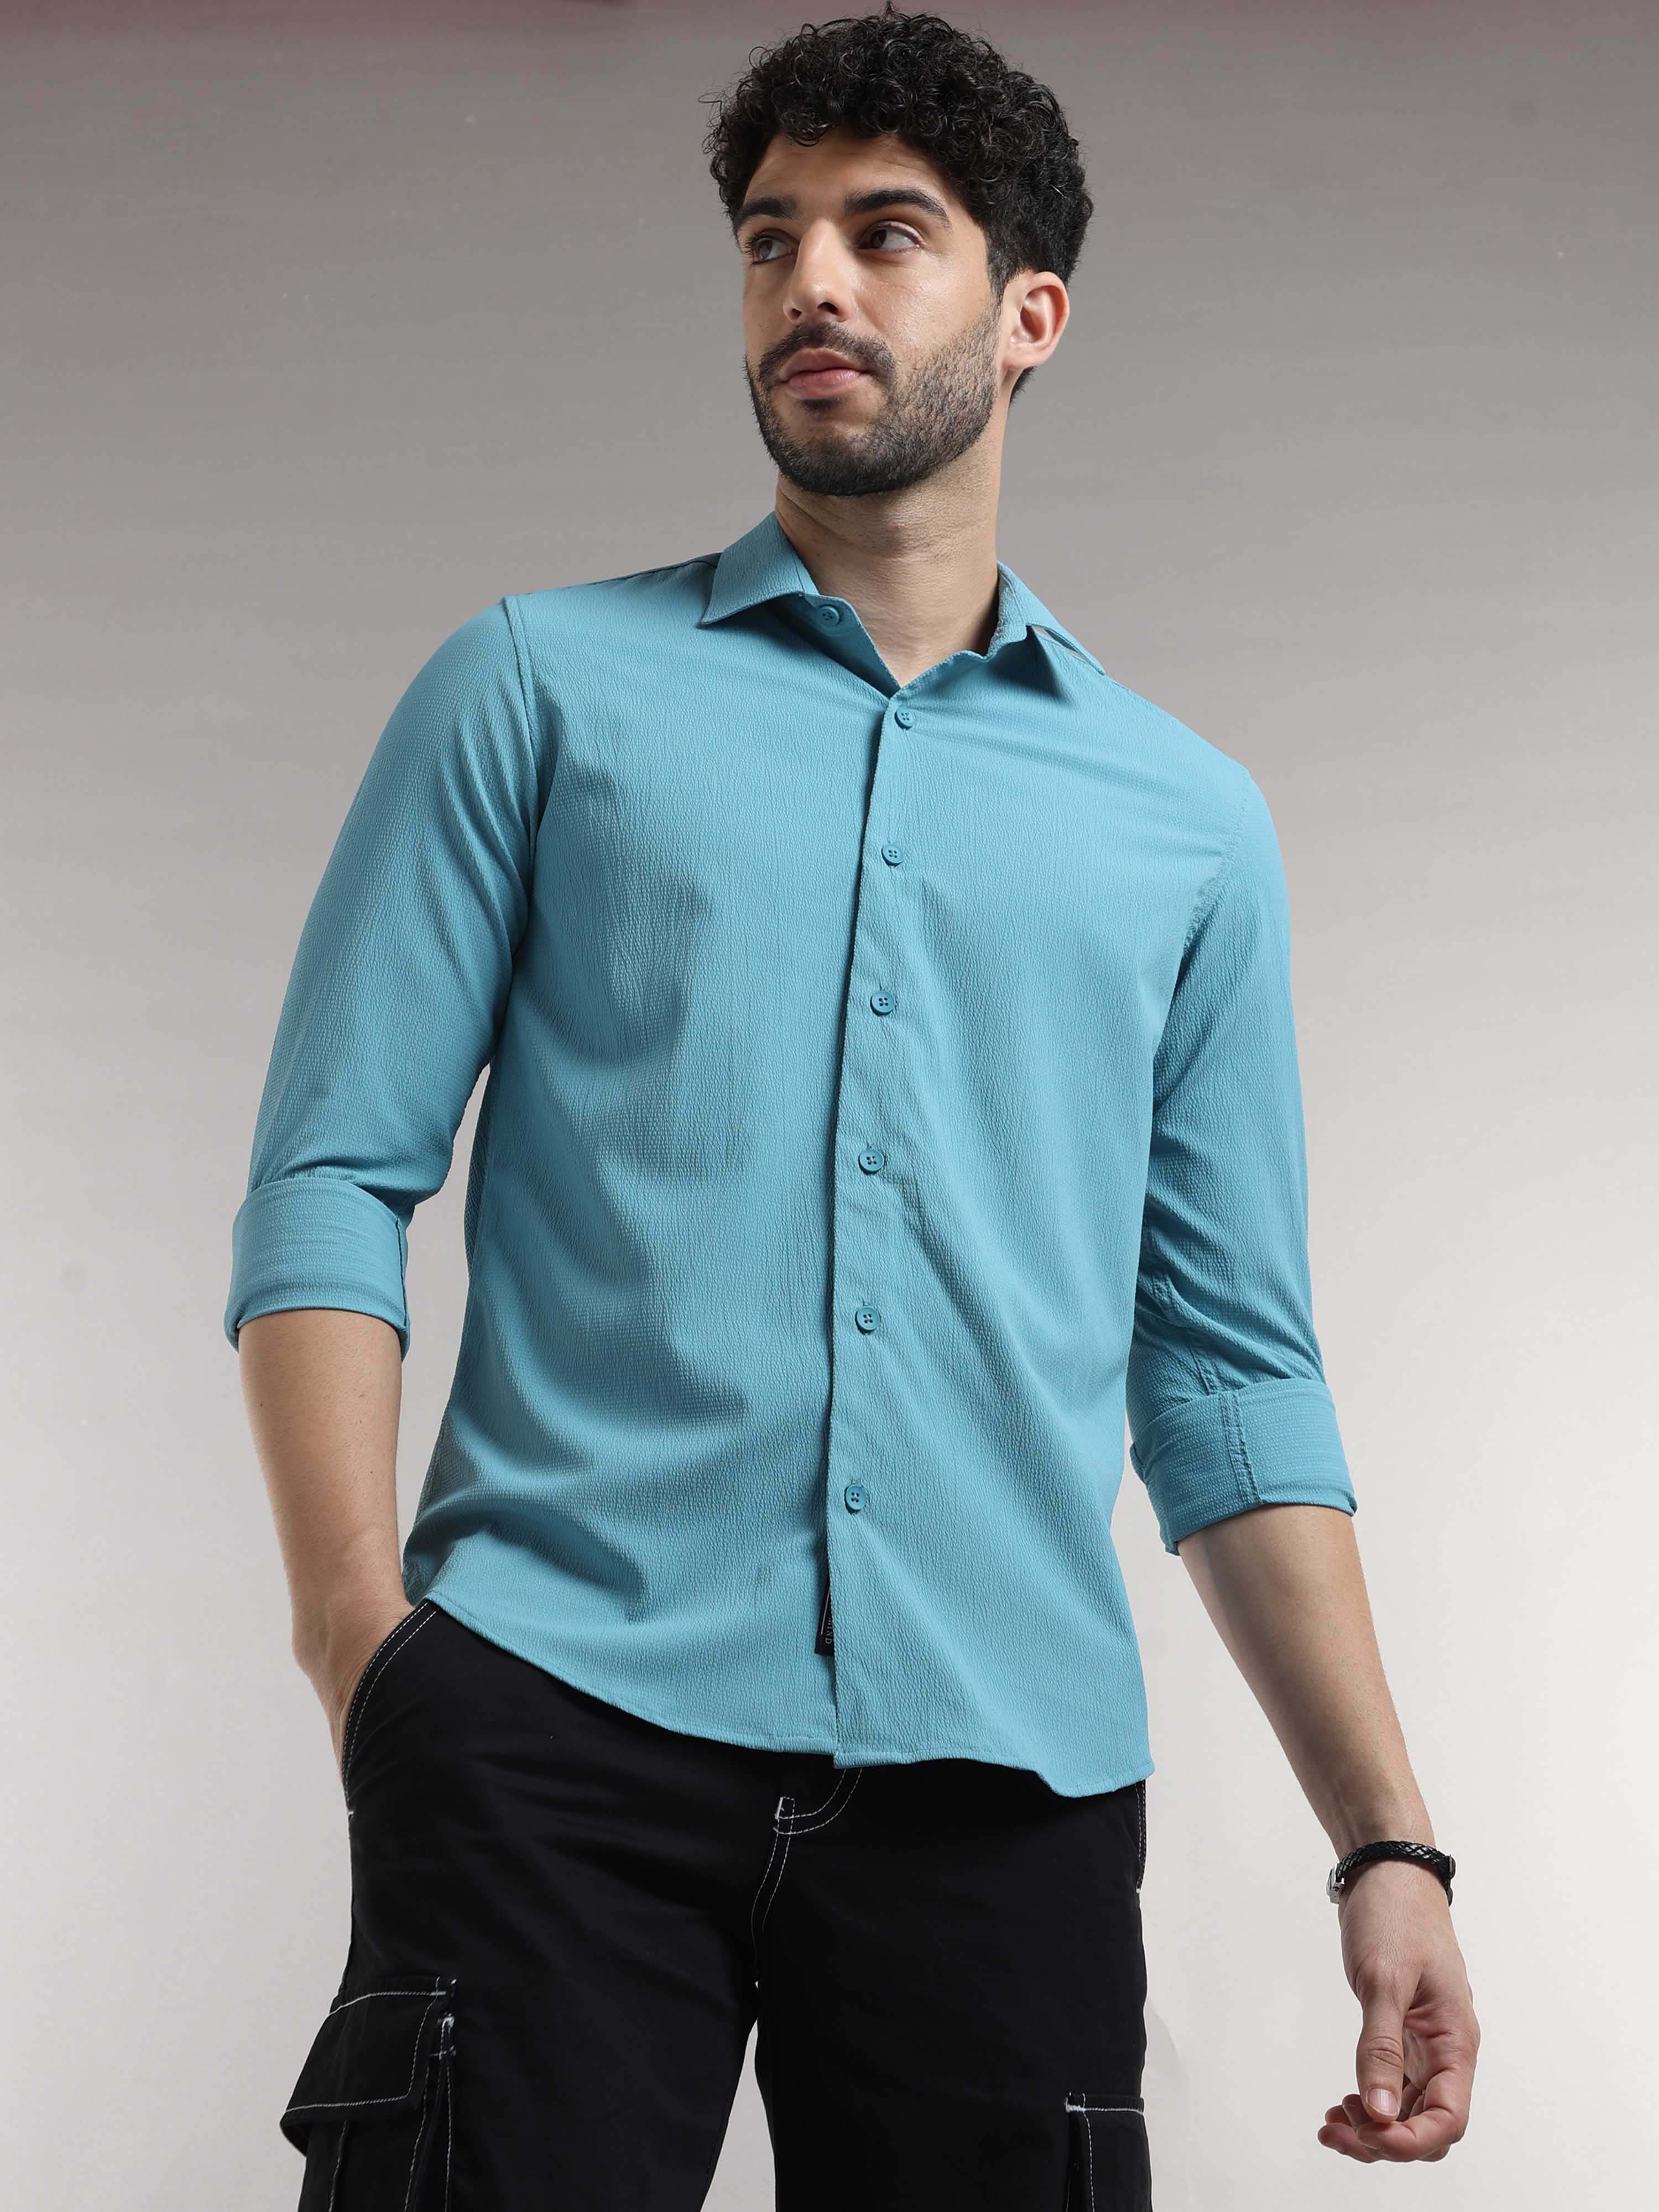 Buy Latest Blue Seer Sucker Shirt For Men Online in IndiaRs. 1299.00